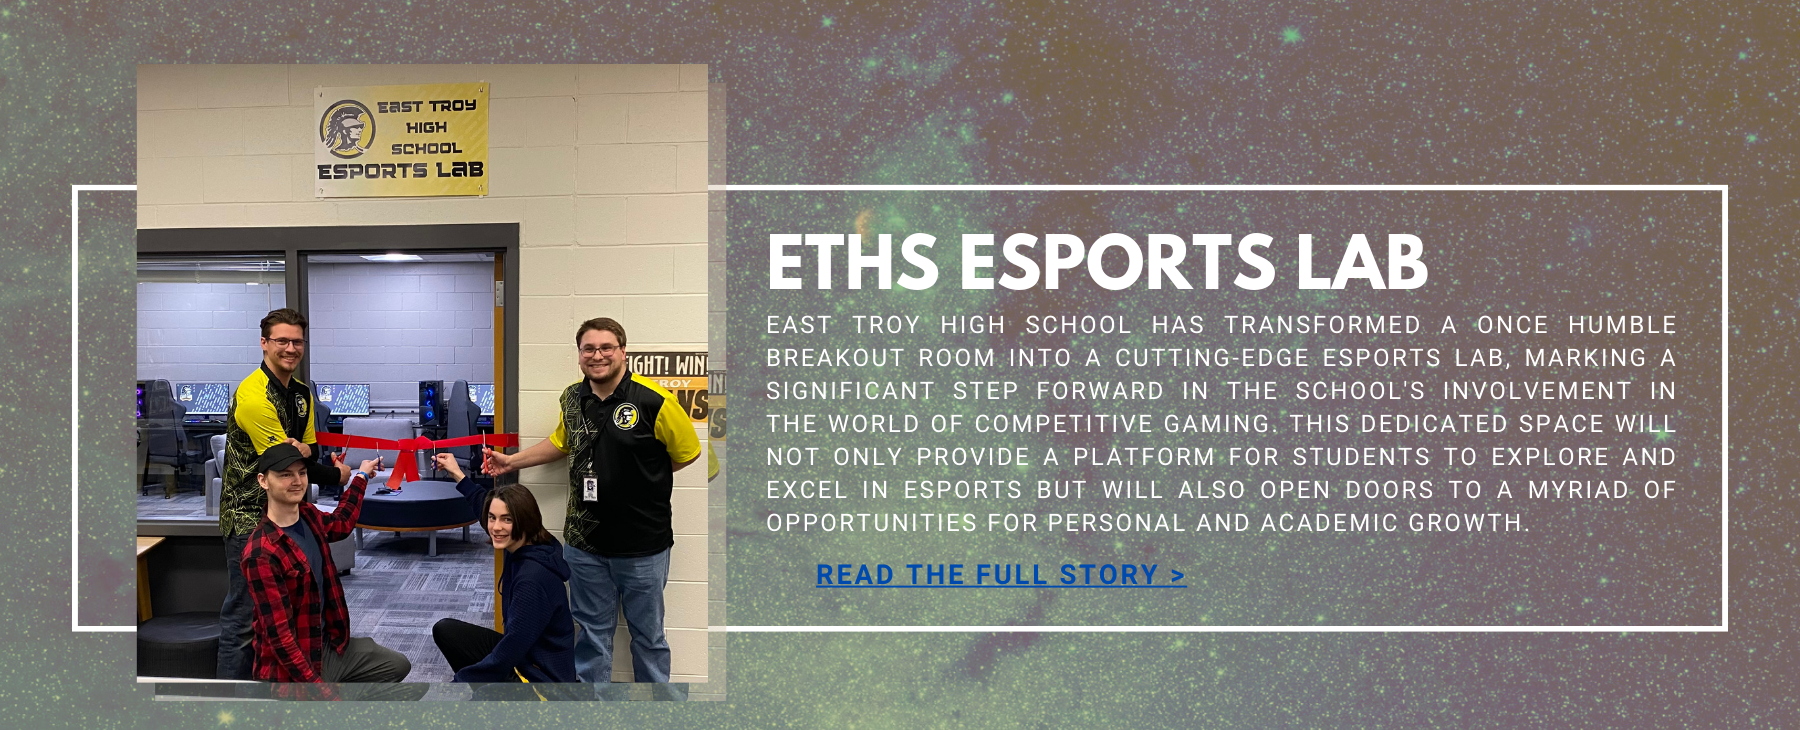 ETHS Esports Lab